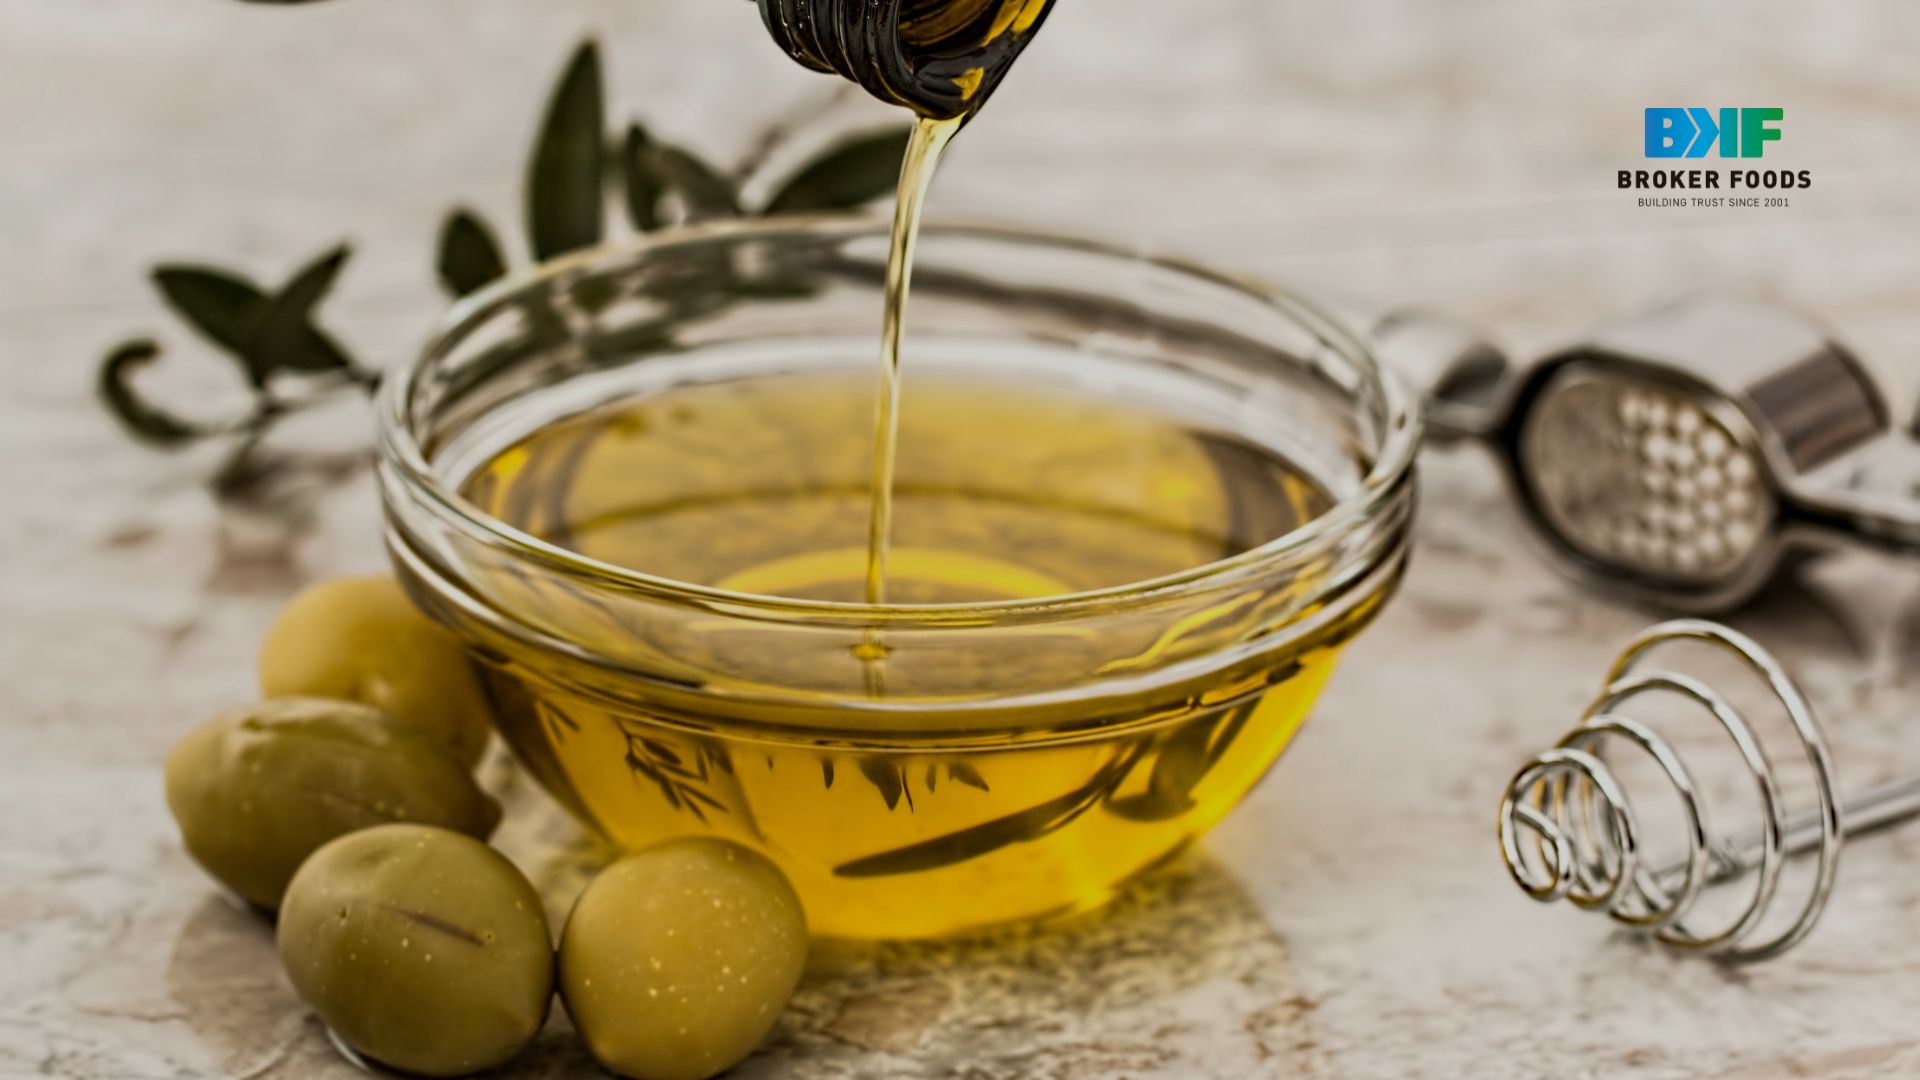 Aceite de oliva, Broker Foods